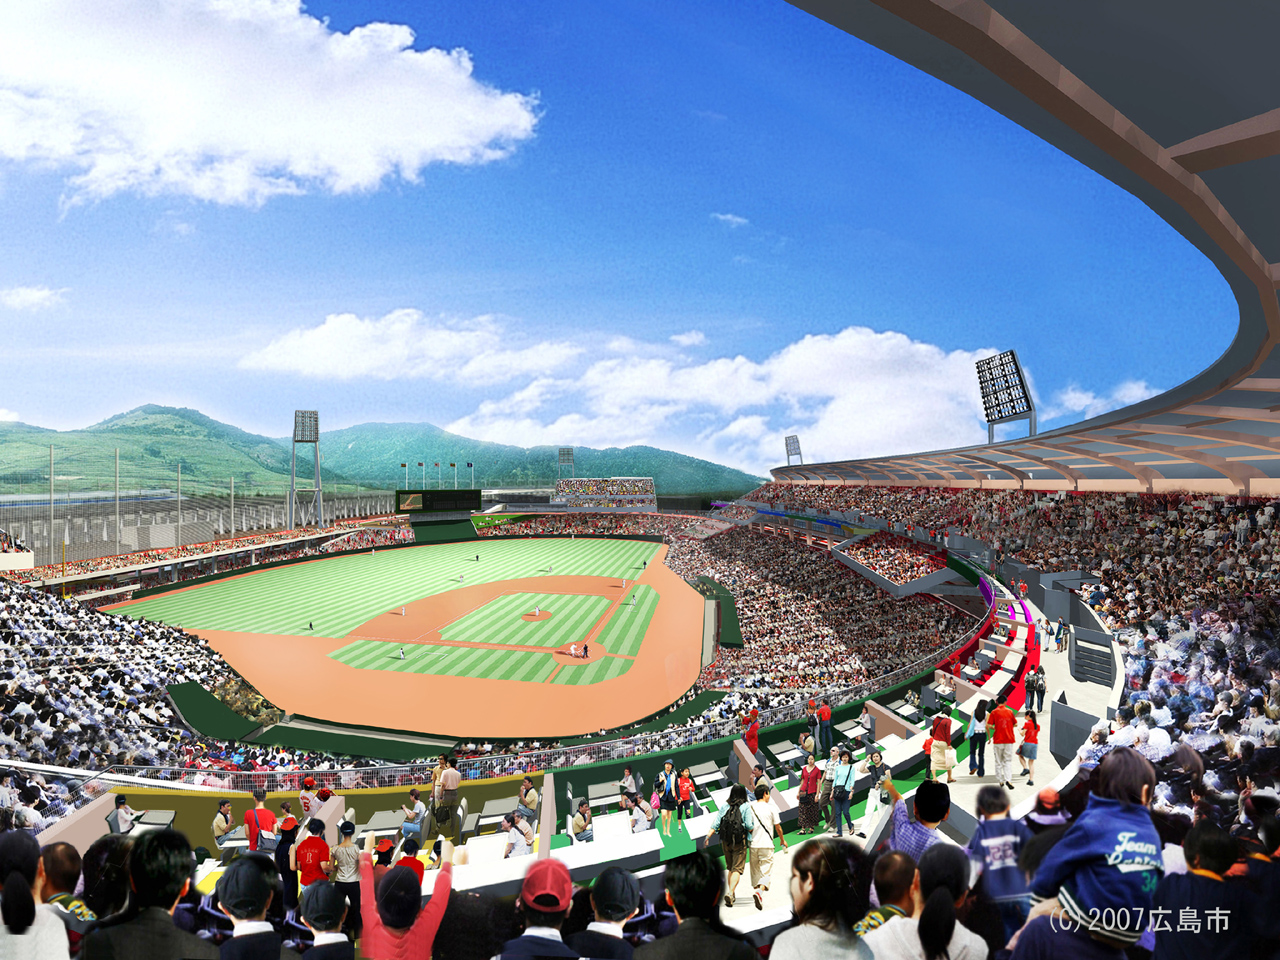 壁紙ダウンロード 広島市民球場のイメージ 広島市公式ホームページ